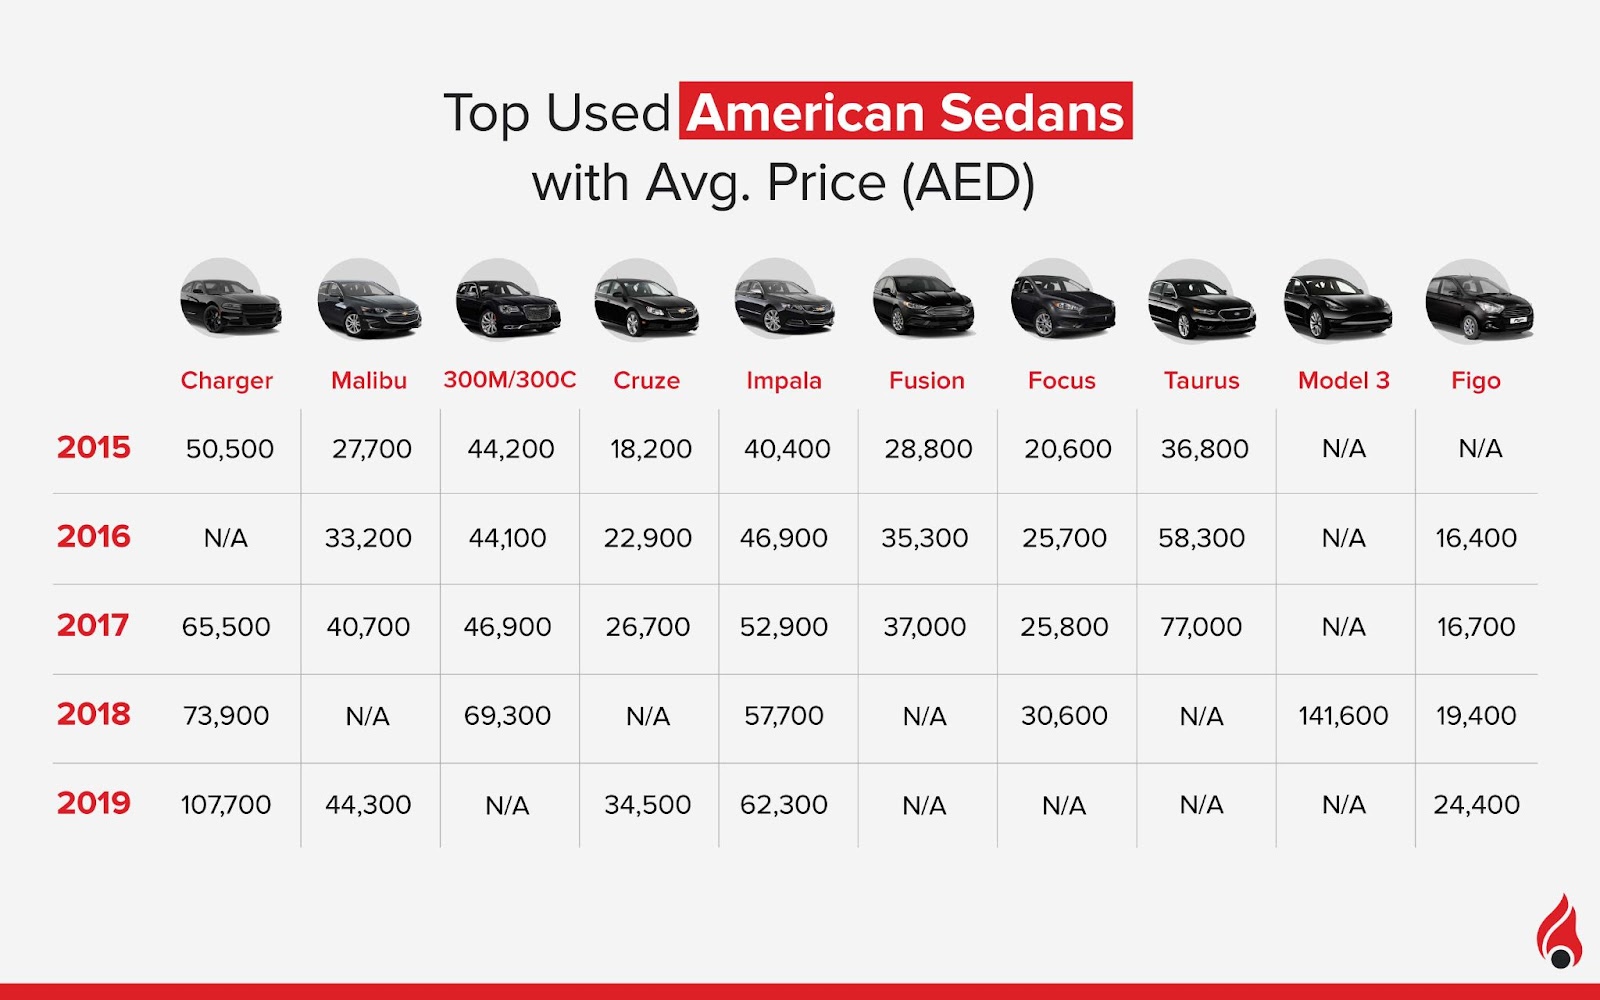 average price of top used American Sedans